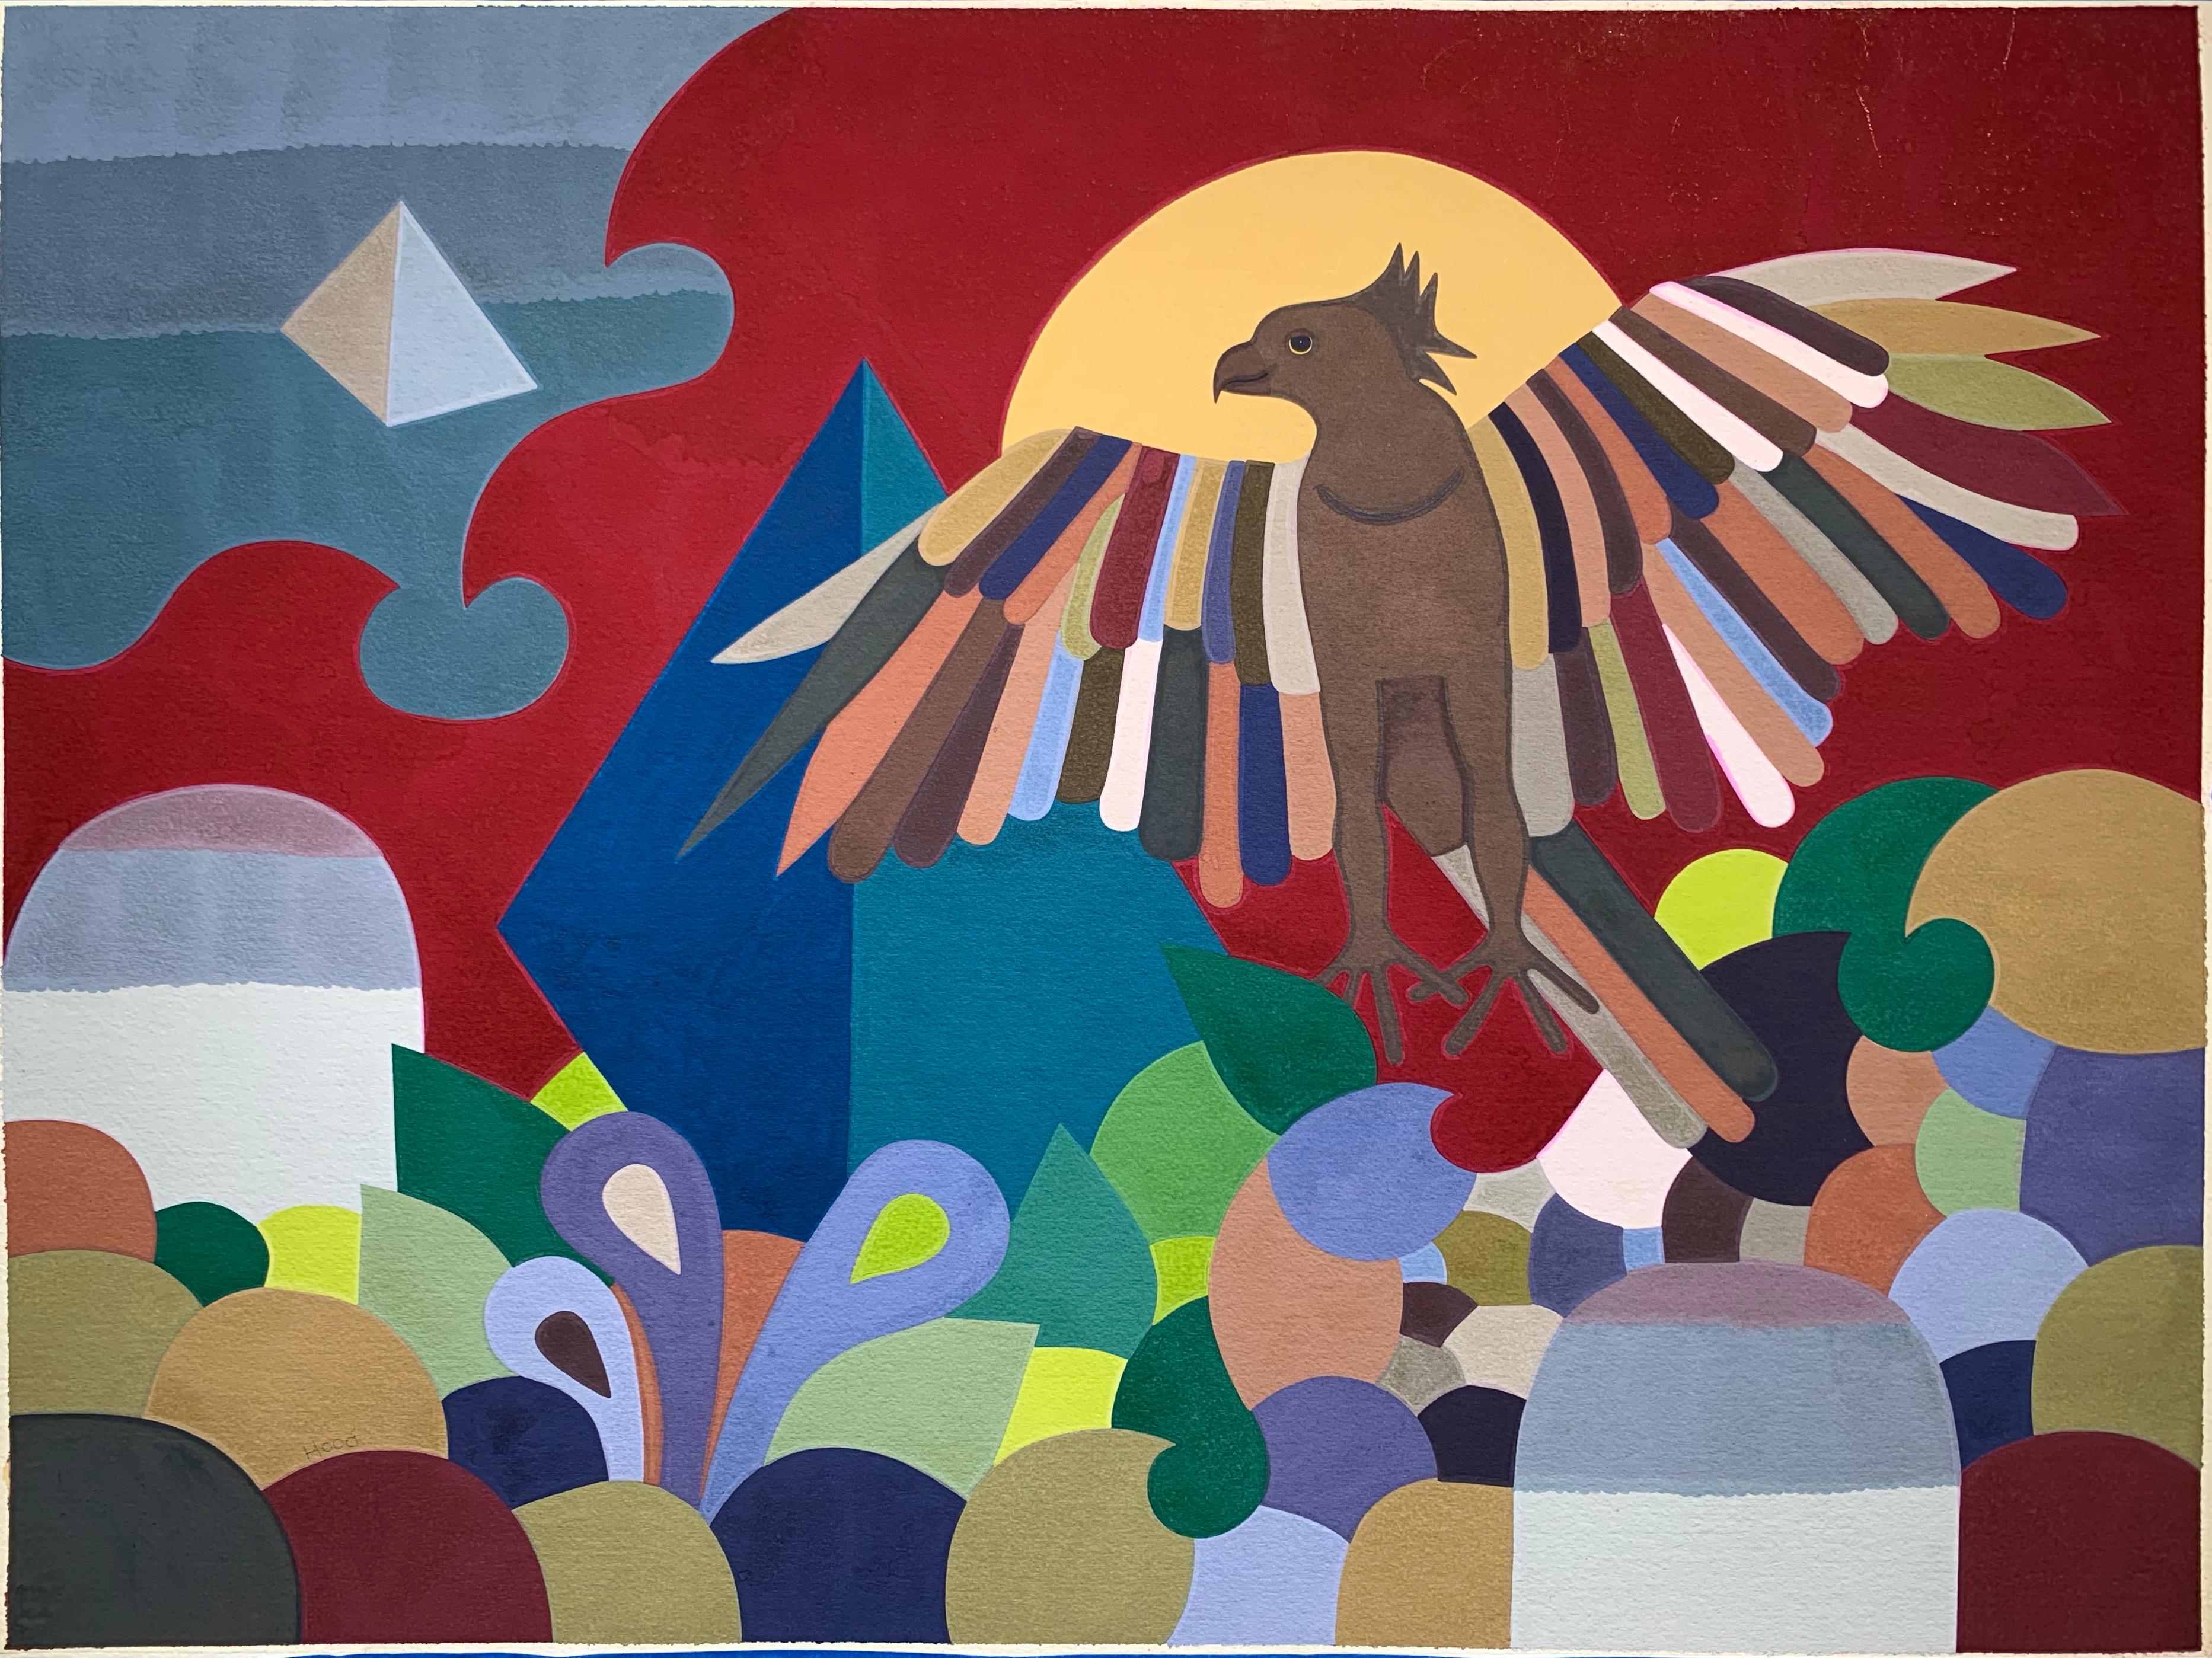 Hawk (Comanche surrealistisches Gemälde der amerikanischen Ureinwohner)